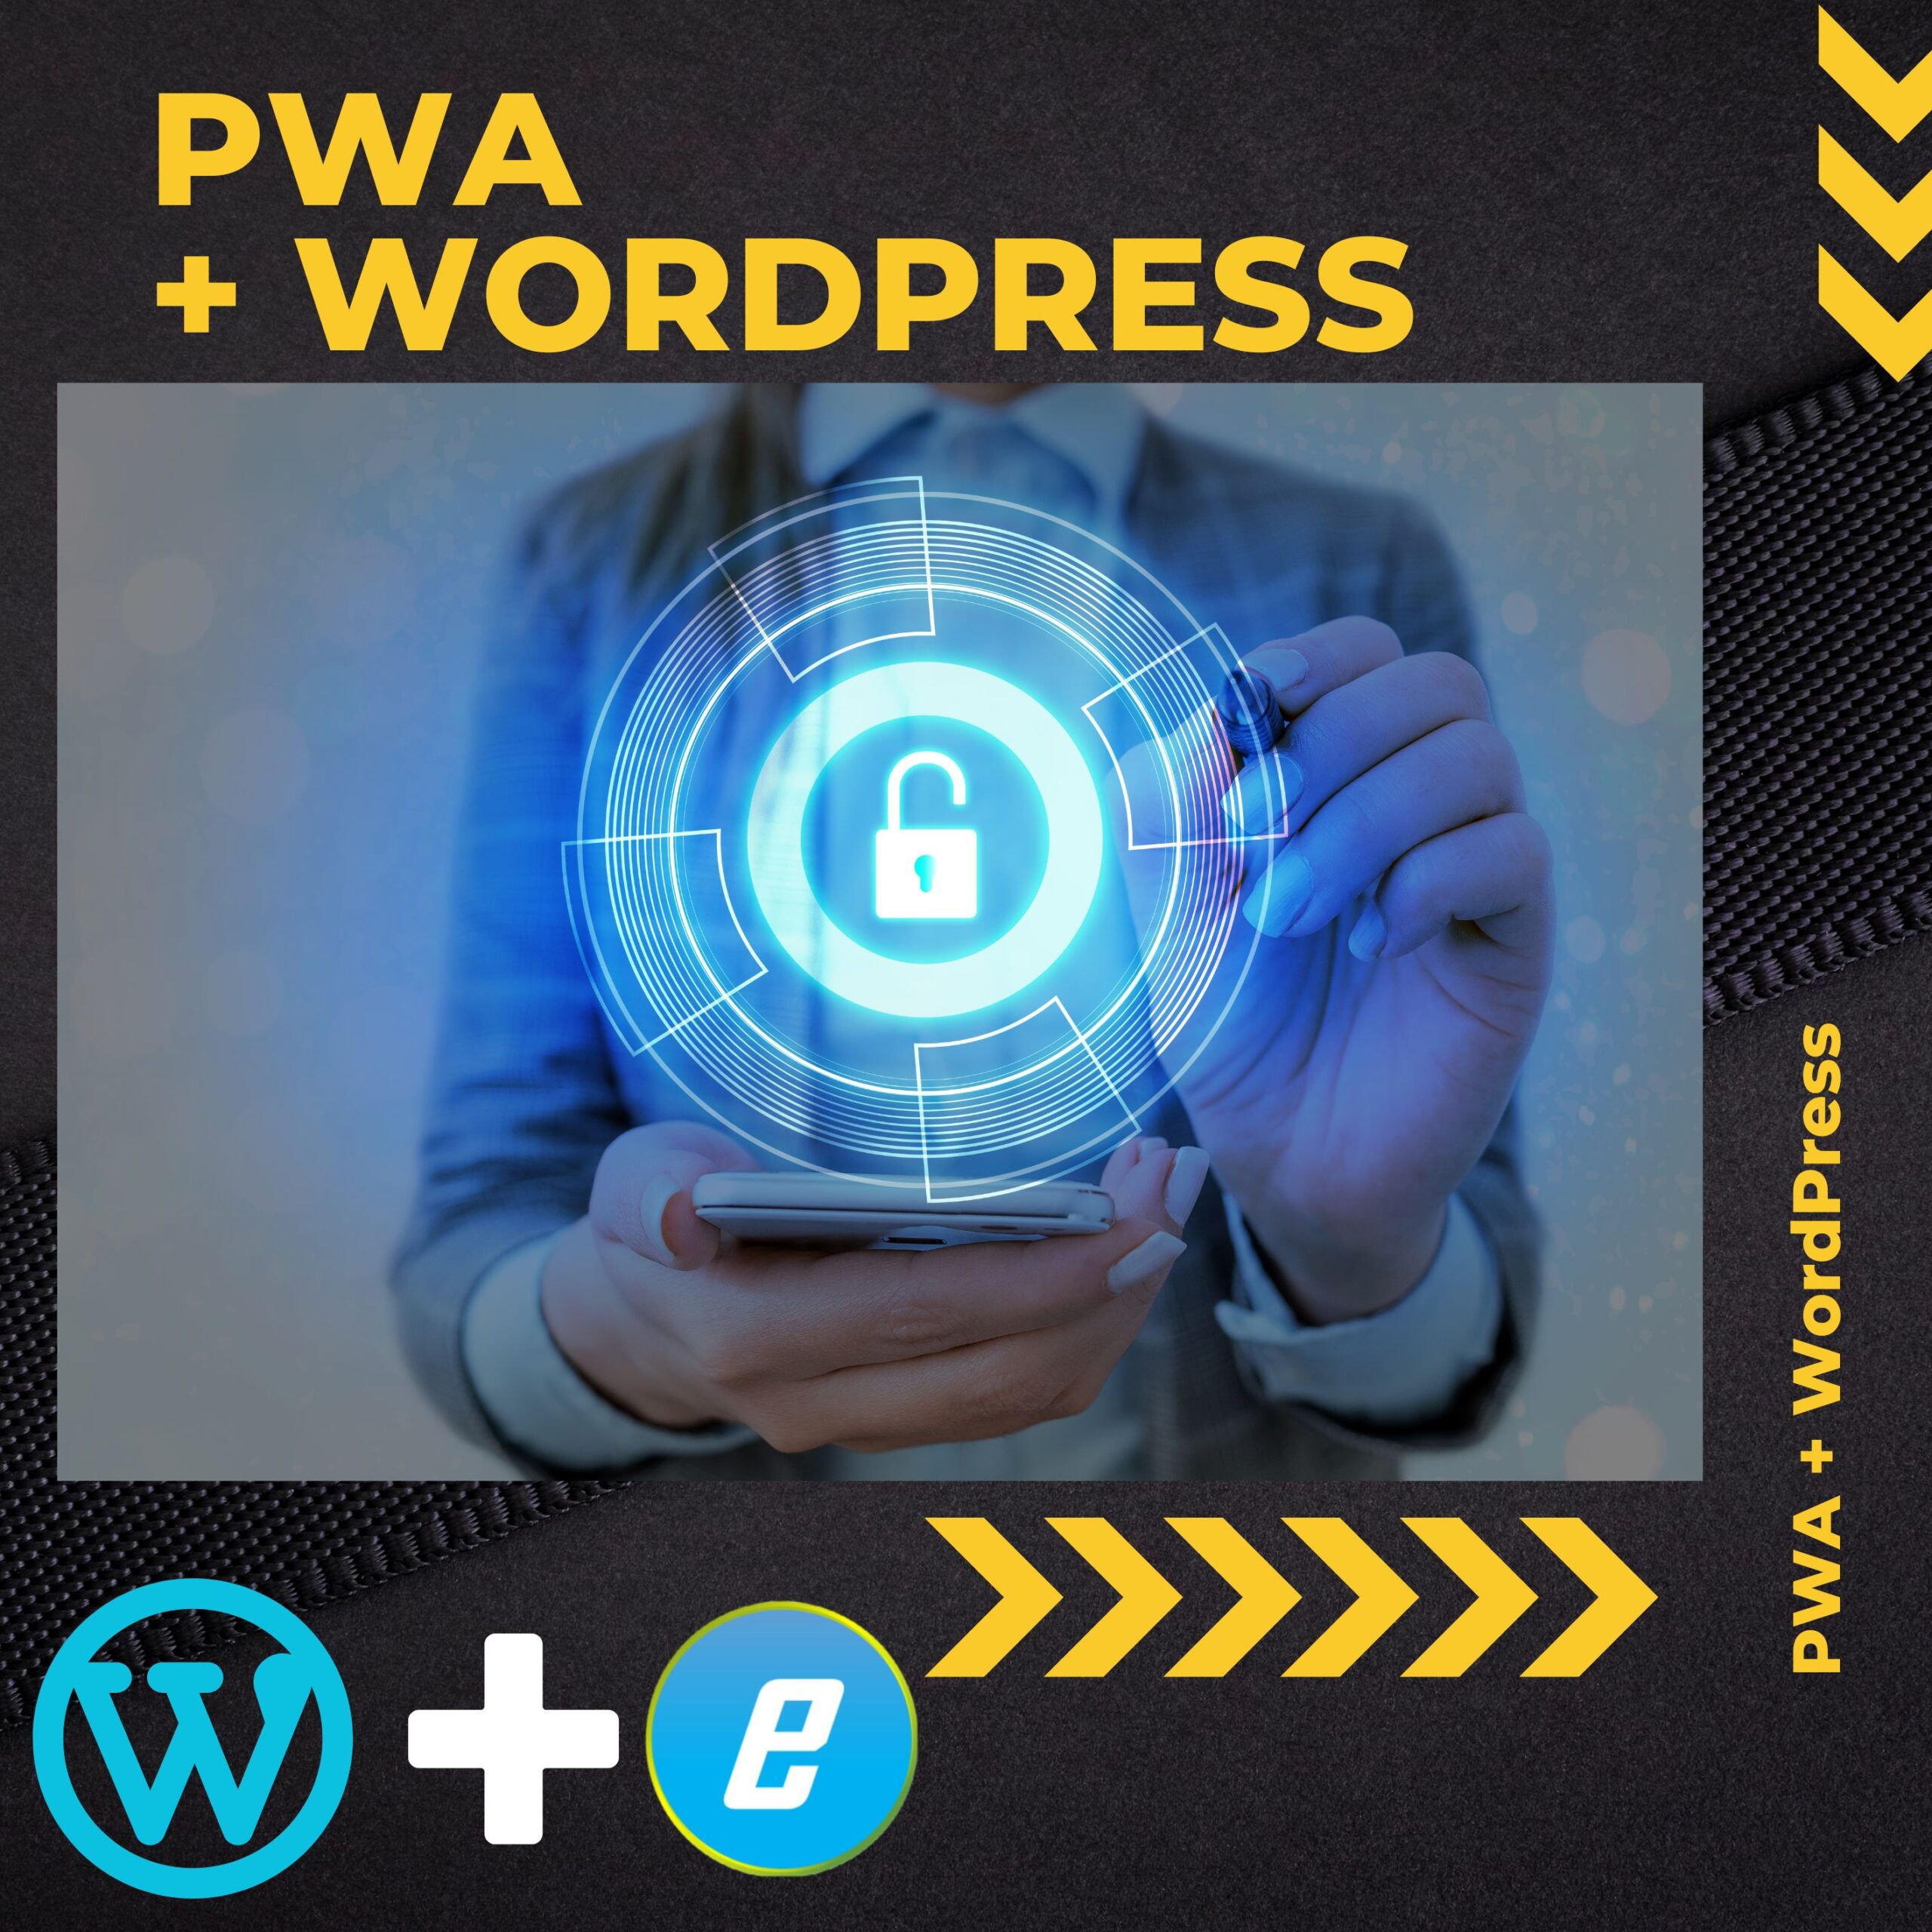 Votre site web en PWA… Extension WordPress